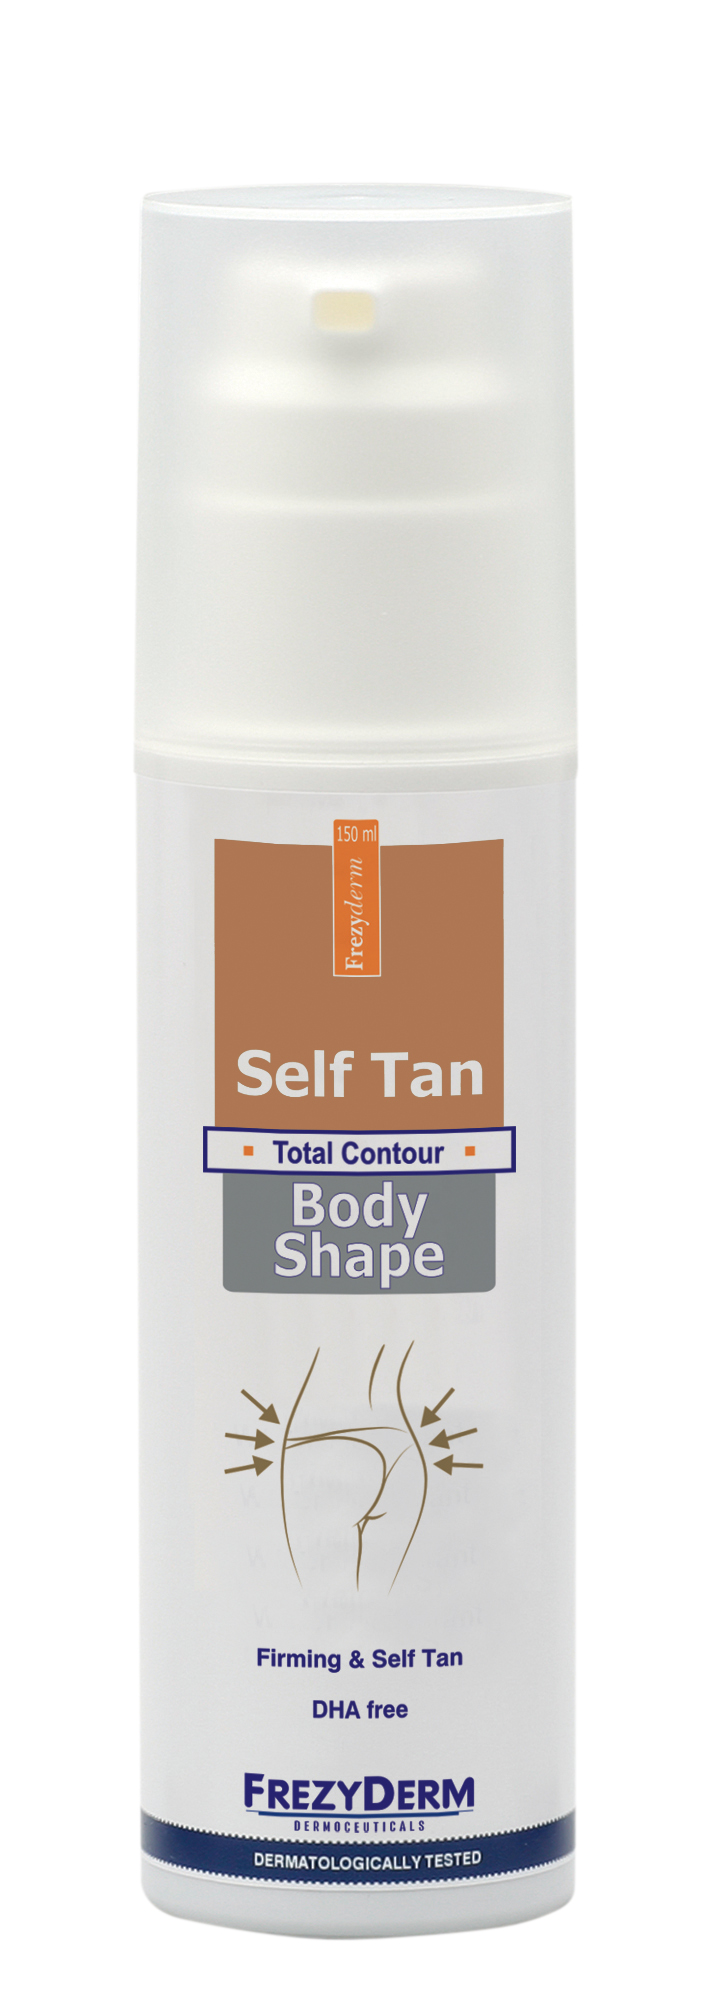 Frezyderm Self Tan Body Shape